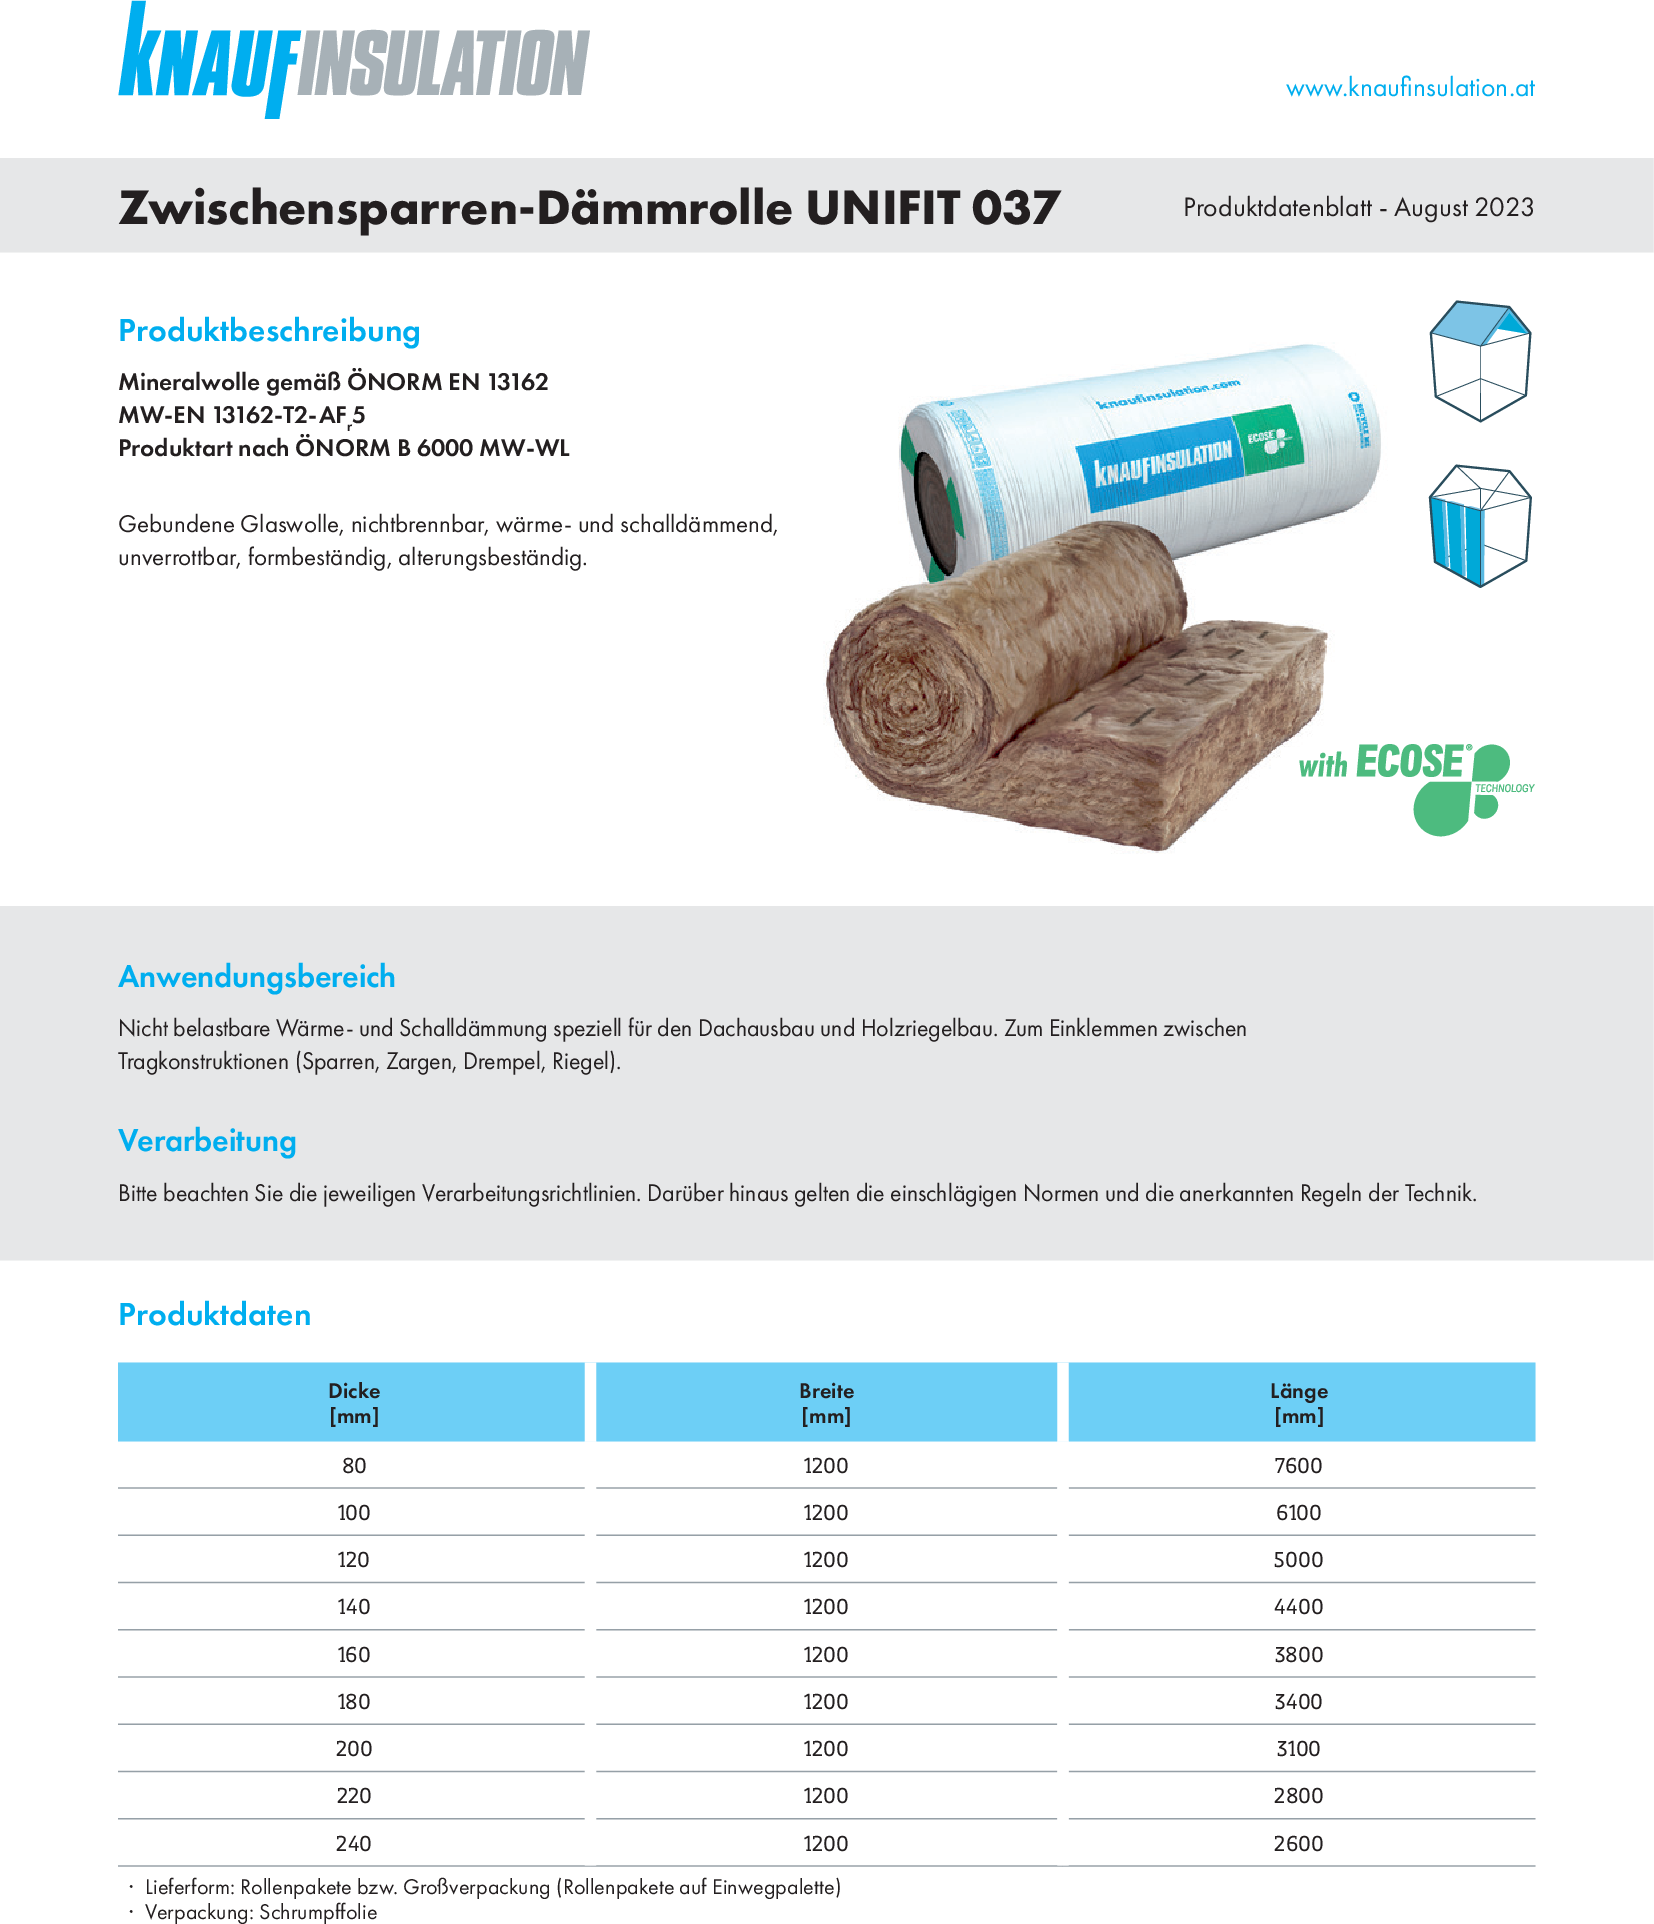 Zwischensparren-Dämmrolle UNIFIT 037, Produktdatenblatt